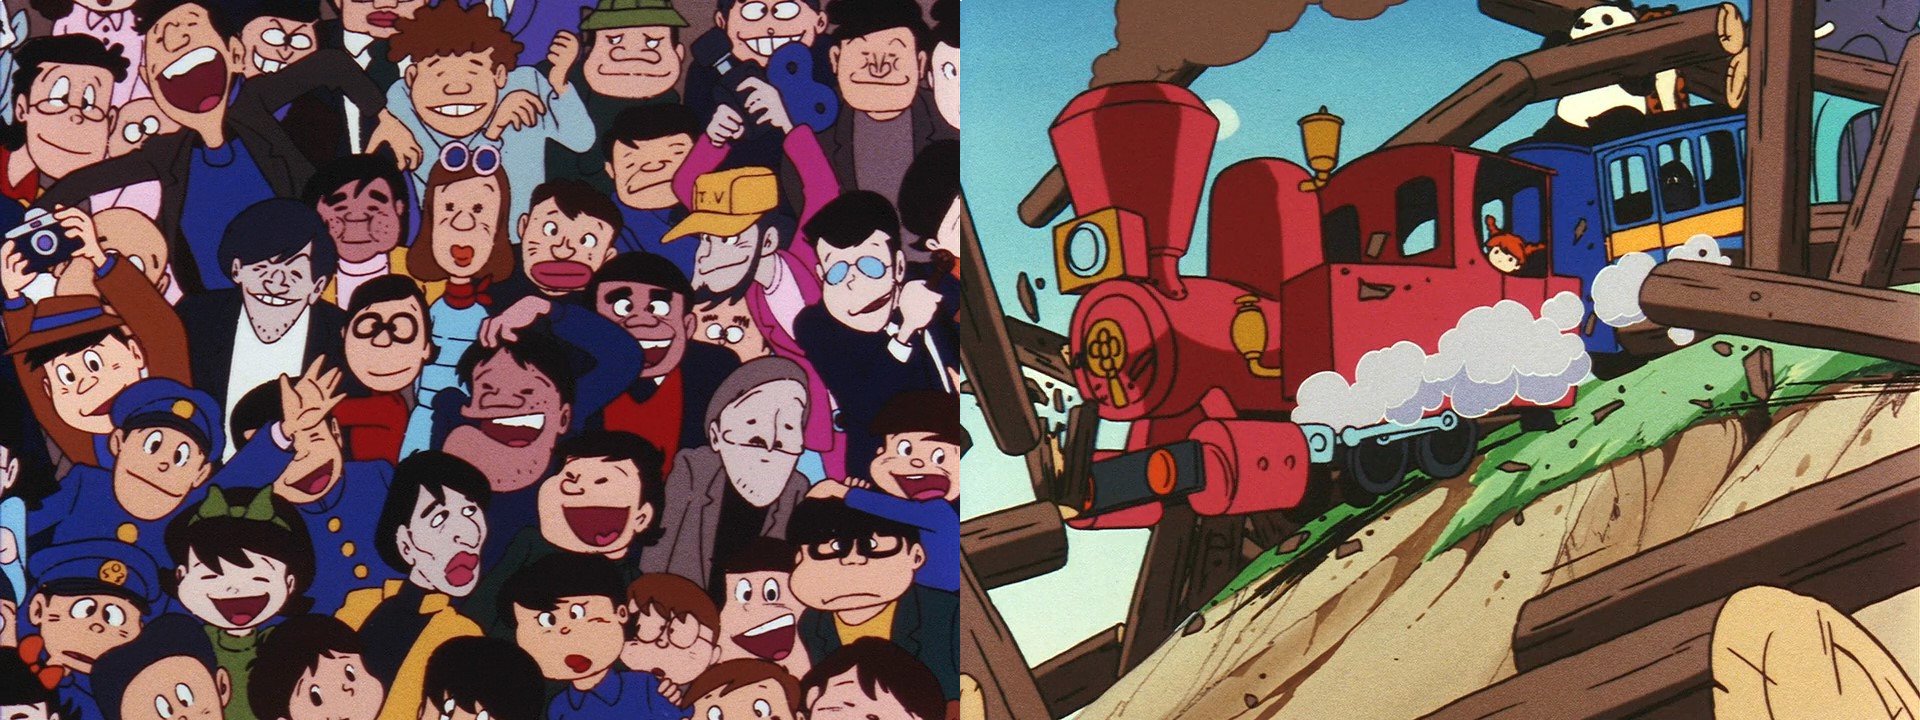 I due mediometraggi cinematografici della serie Panda! Go, Panda! sono usciti rispettivamente nel 1972 e nel 1973 per la regia di Takahata e storyboard, sceneggiatura e tanto altro ancora di Miyazaki. Entrambi contengono piccoli collegamenti con il loro lavoro su Lupin III Part 1. Il fotogramma di sinistra, proveniente da una delle scene finali del primo mediometraggio, nasconde tra la folla ritratta anche Lupin e Jigen travestiti da addetti della televisione, come nell’episodio 18 (cambiano però i colori dei loro vestiti!). Nello stesso fotogramma, in basso a destra con gli occhiali spessi, c’è anche Miyazaki stesso con suo figlio sulle spalle. Non si tratta degli unici camei presenti nella scena. Il secondo mediometraggio, Il circo sotto la pioggia, da cui proviene il fotogramma di destra, contiene invece un’intera sequenza di scene ed eventi al cui centro vi è il deragliamento di un treno che è simile, se non addirittura identica in alcune inquadrature e animazioni, a una sequenza analoga presente nell’episodio 21. Infine, in entrambi i film è presente Yasuo Yamada, doppiatore di Lupin III. Nel primo interpreta il personaggio del postino mentre nel secondo è uno dei membri del circo. 